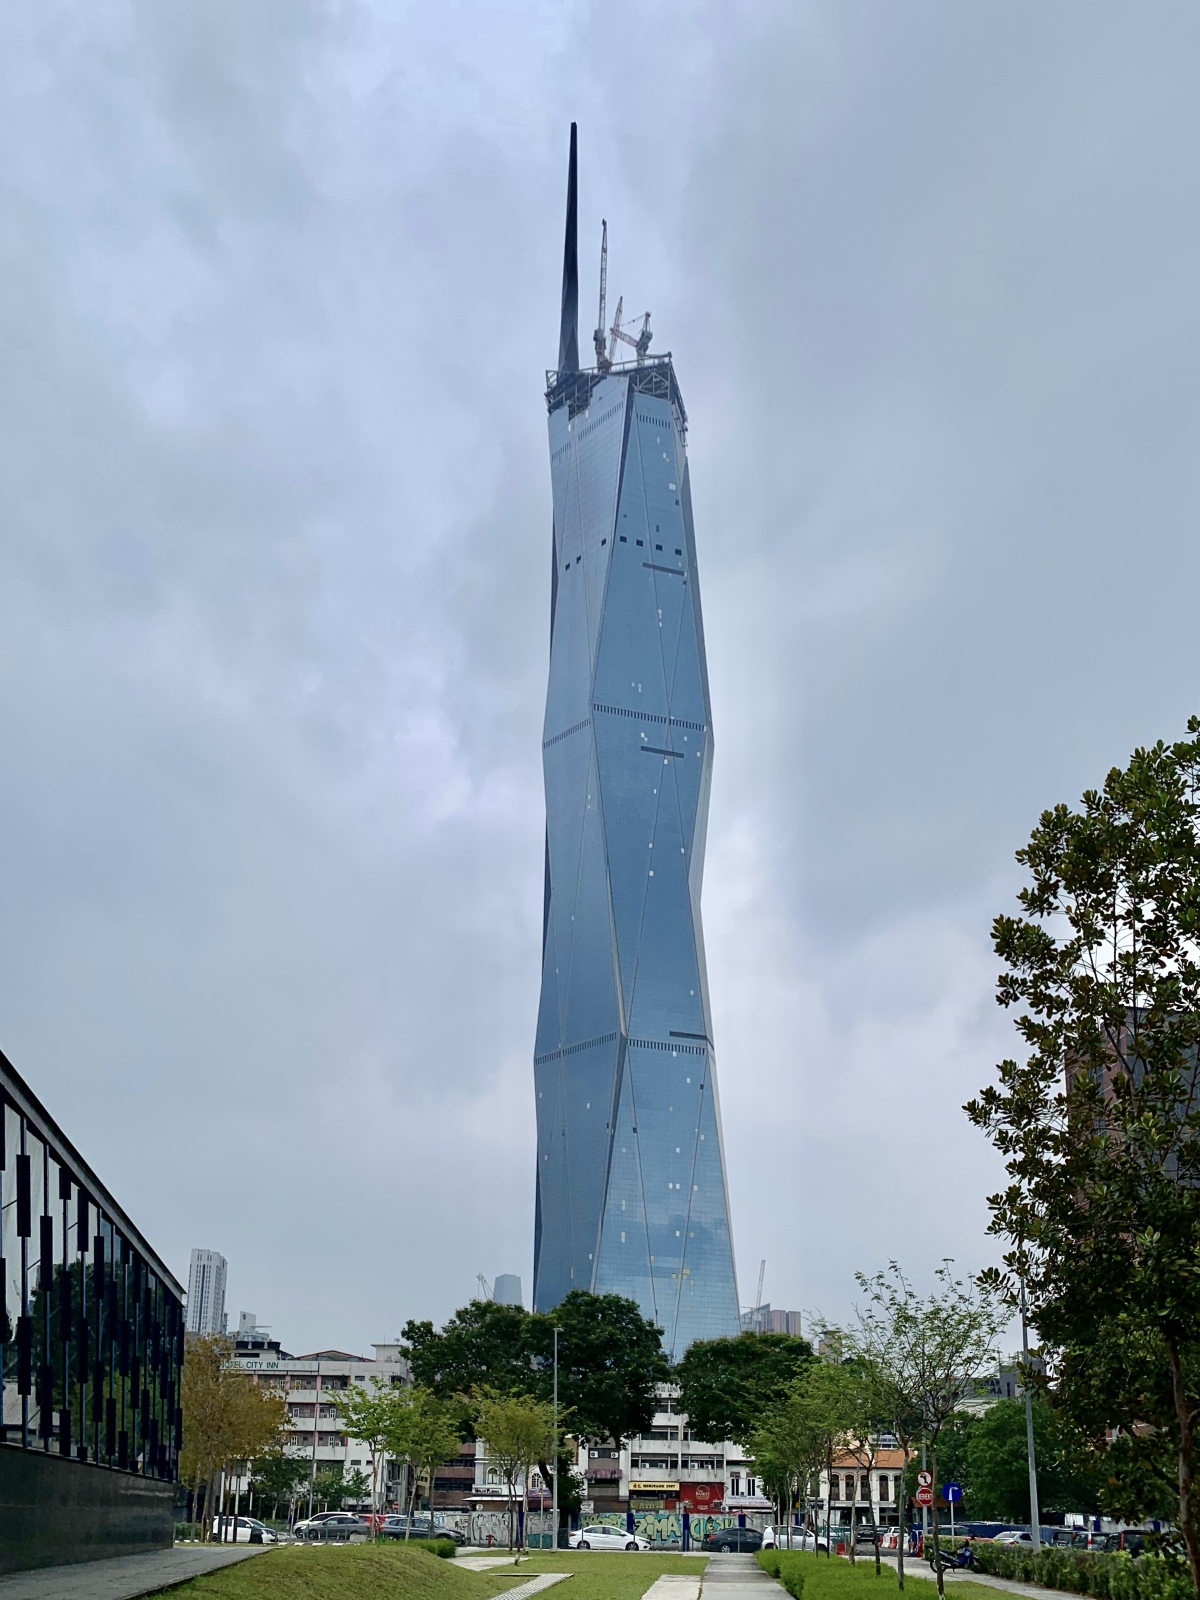 The Merdeka 118 skyscraper in Kuala Lumpur, Malaysia